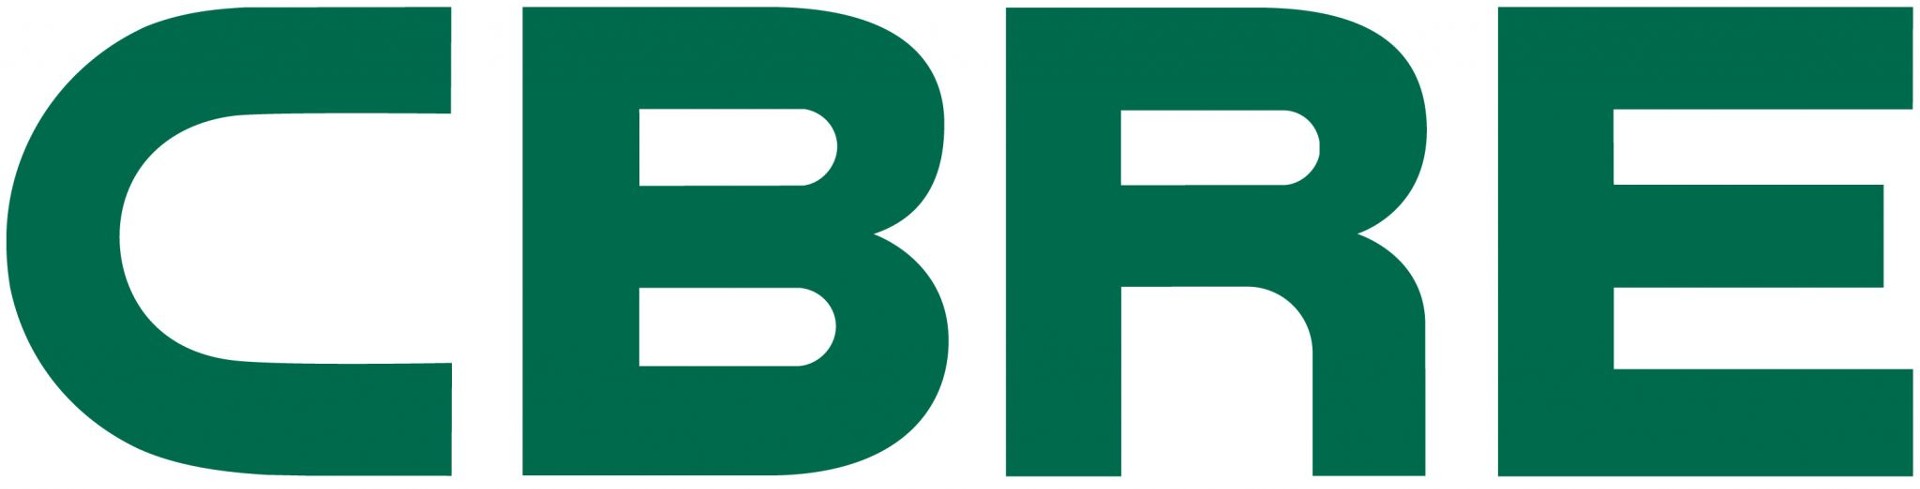 CBRE Sp.zo.o logo